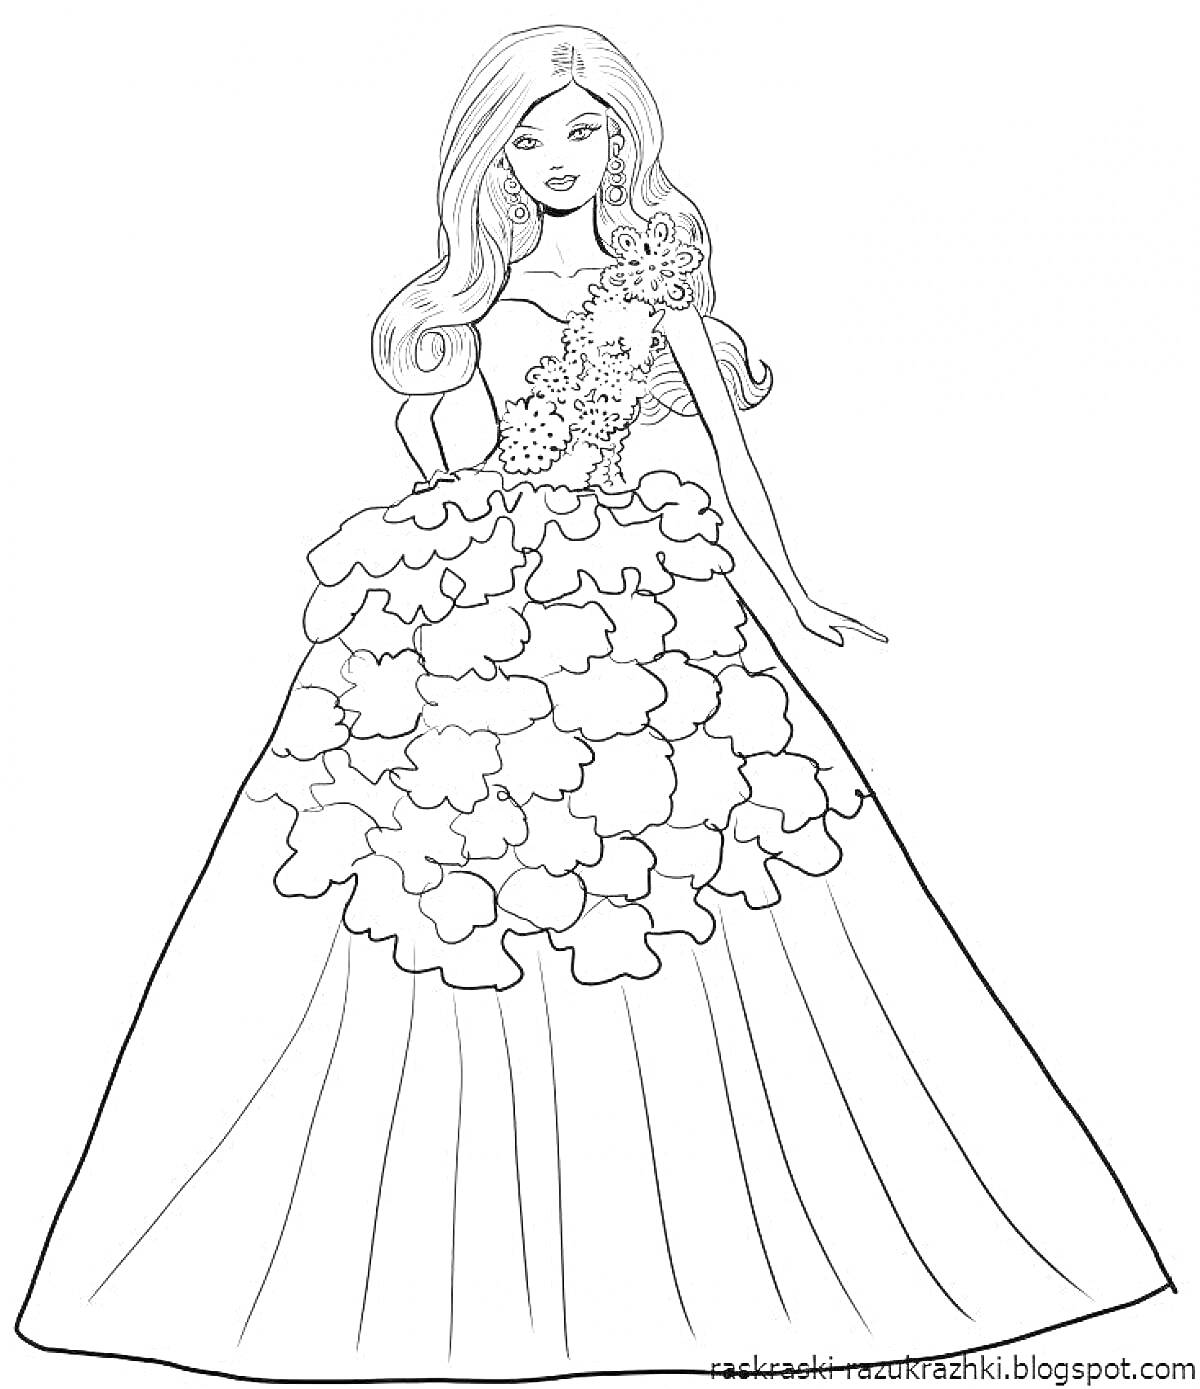 Раскраска Кукла Барби в длинном пышном платье с цветочным декором на лифе и юбке